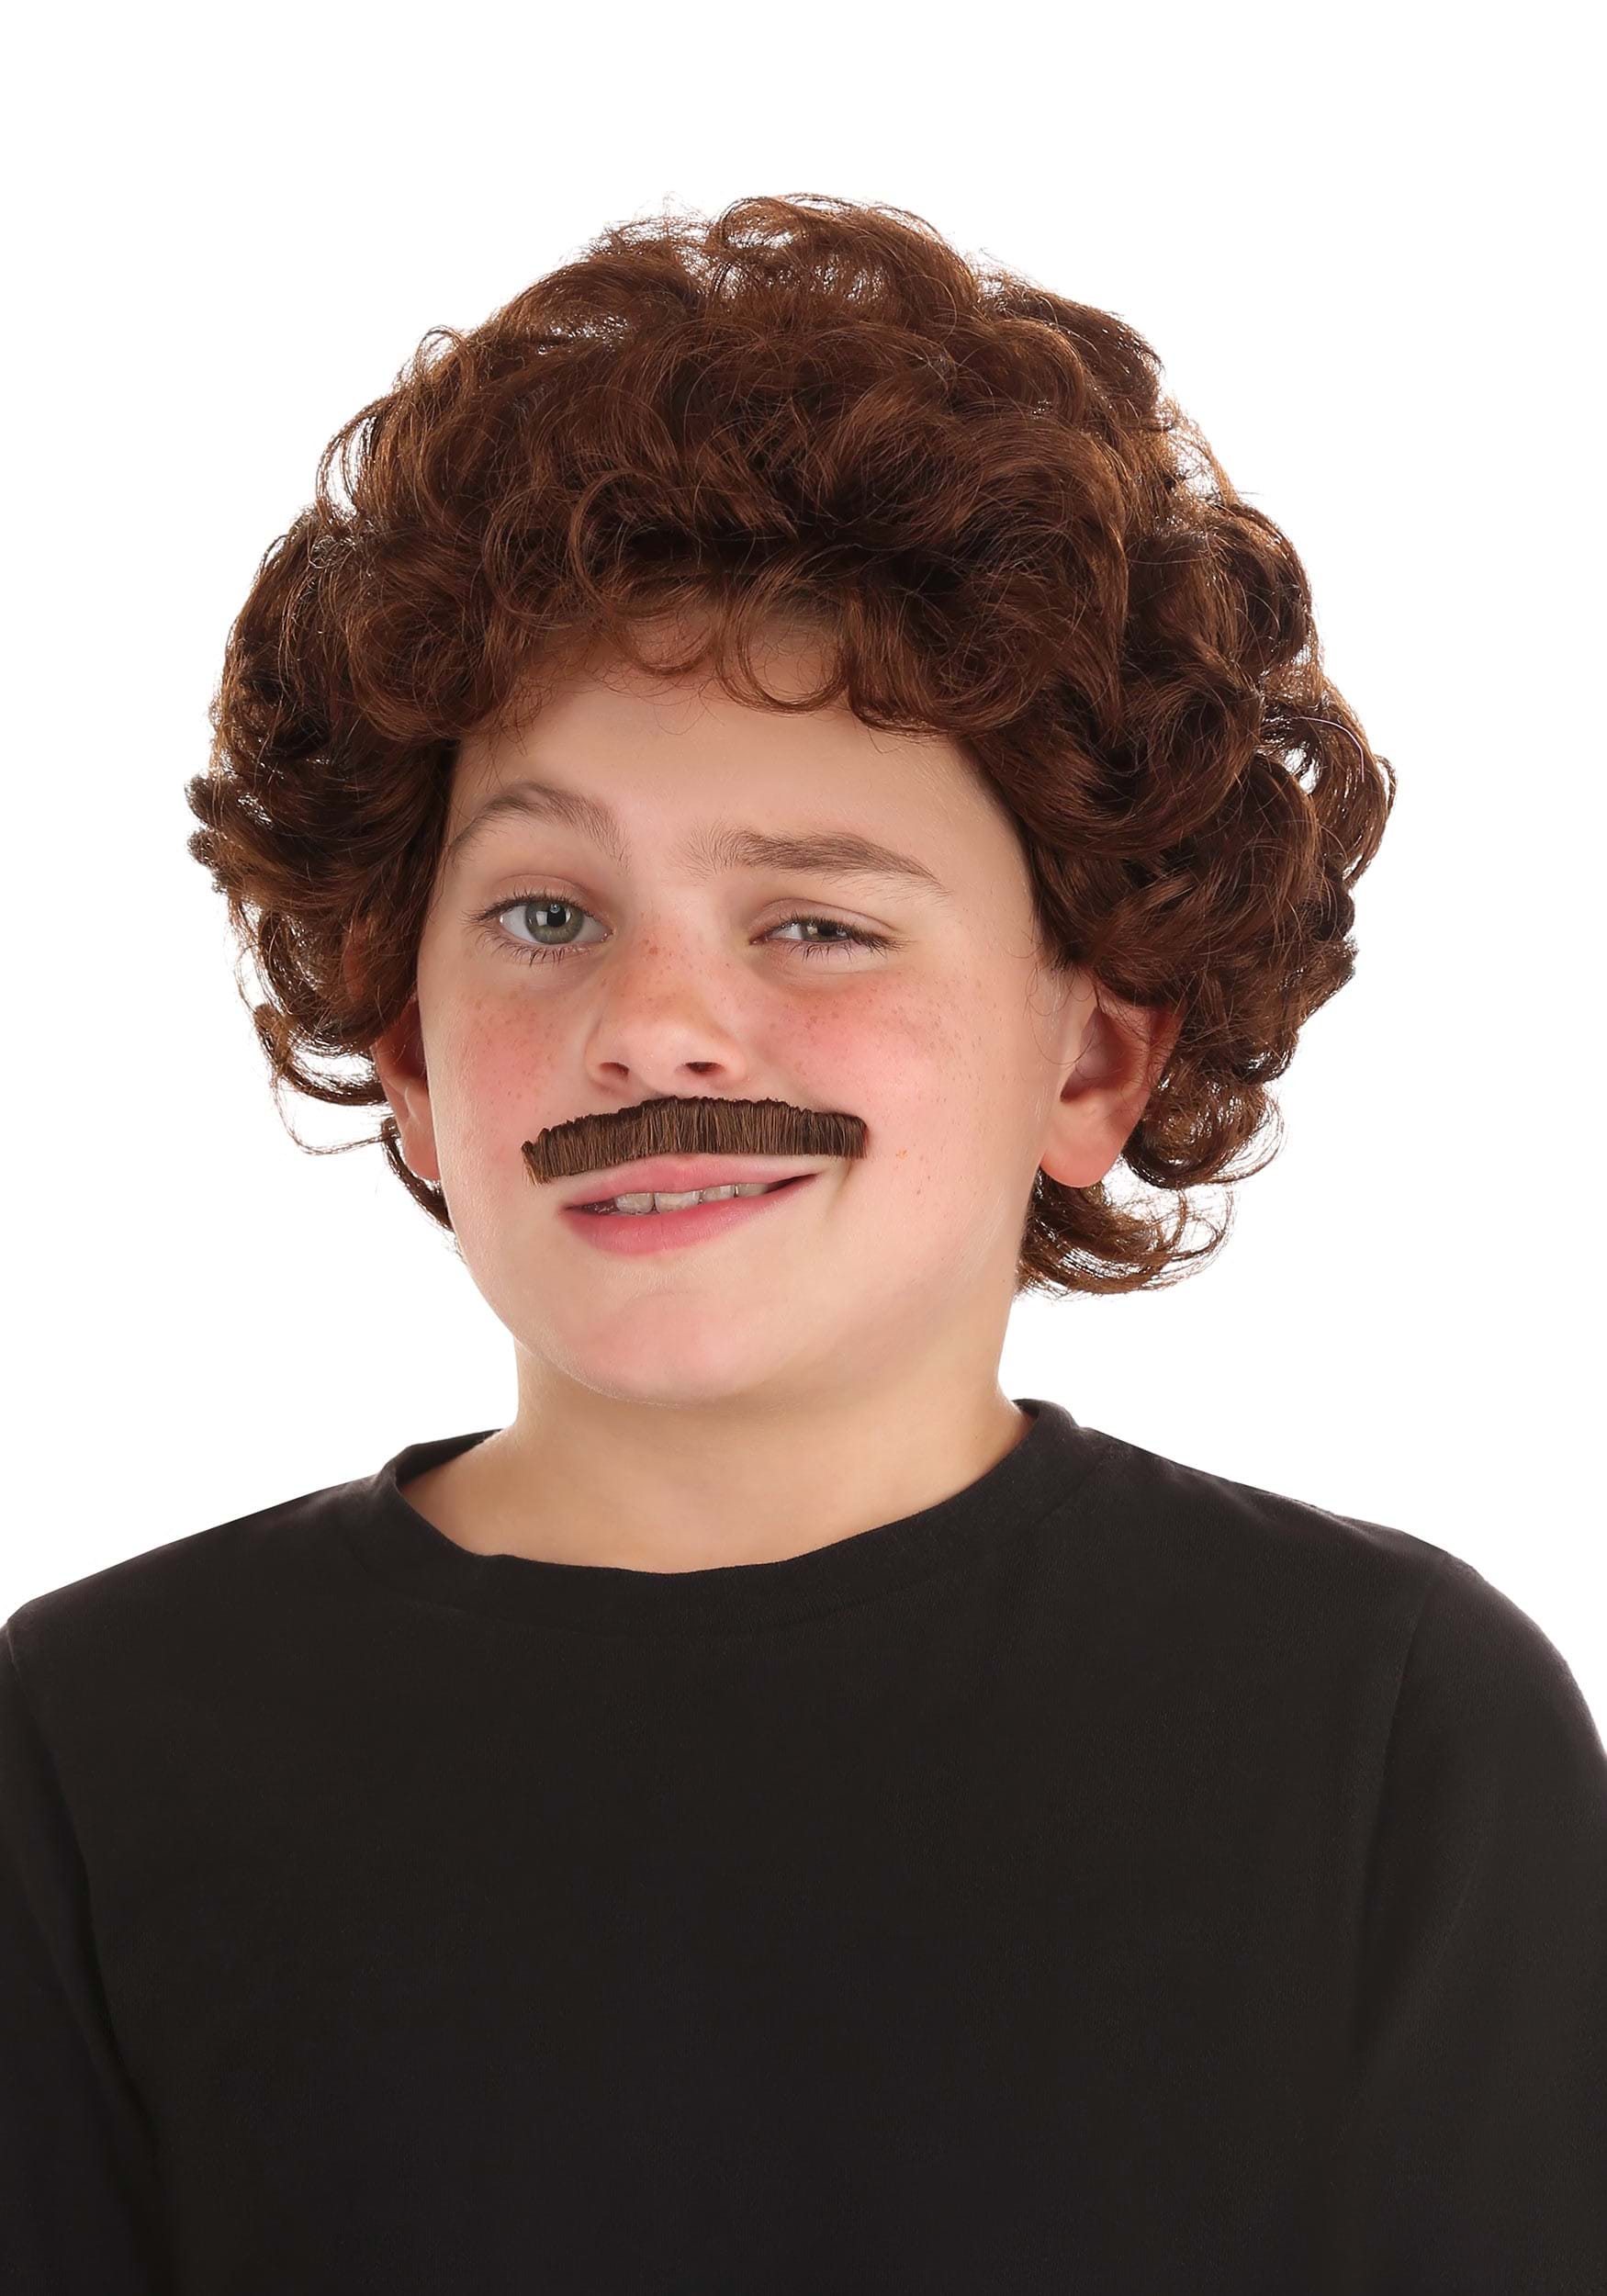 Nacho Libre Child Wig and Mustache Accessories